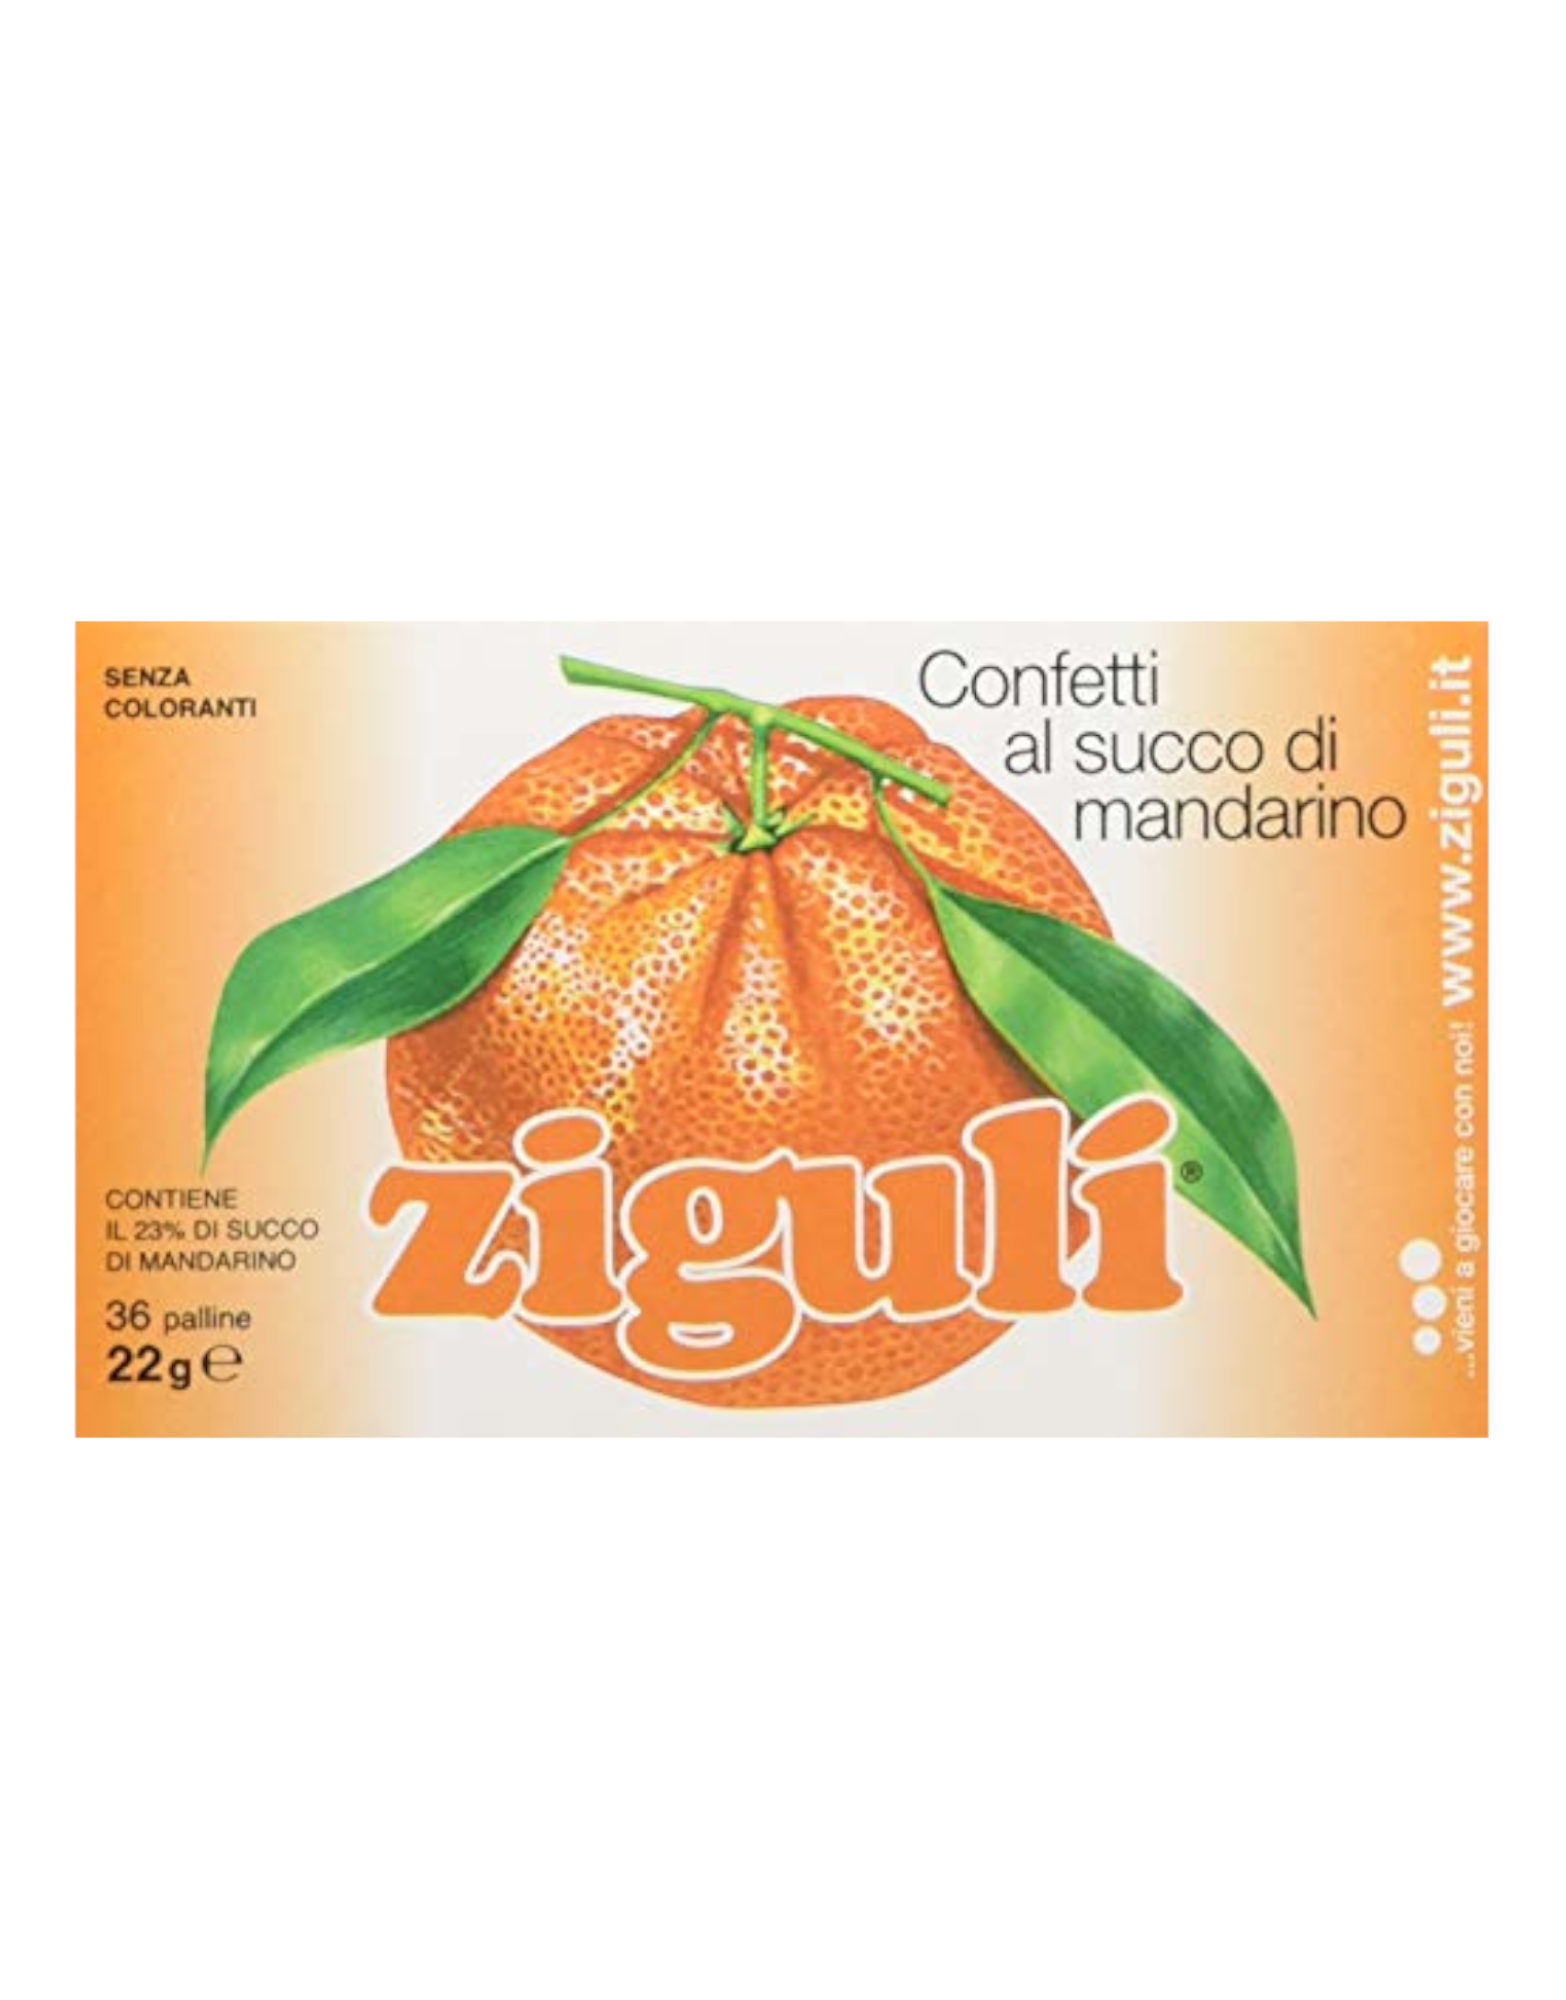 Confetti al Gusto di Mandarino by Zigulì, 36 sweets 